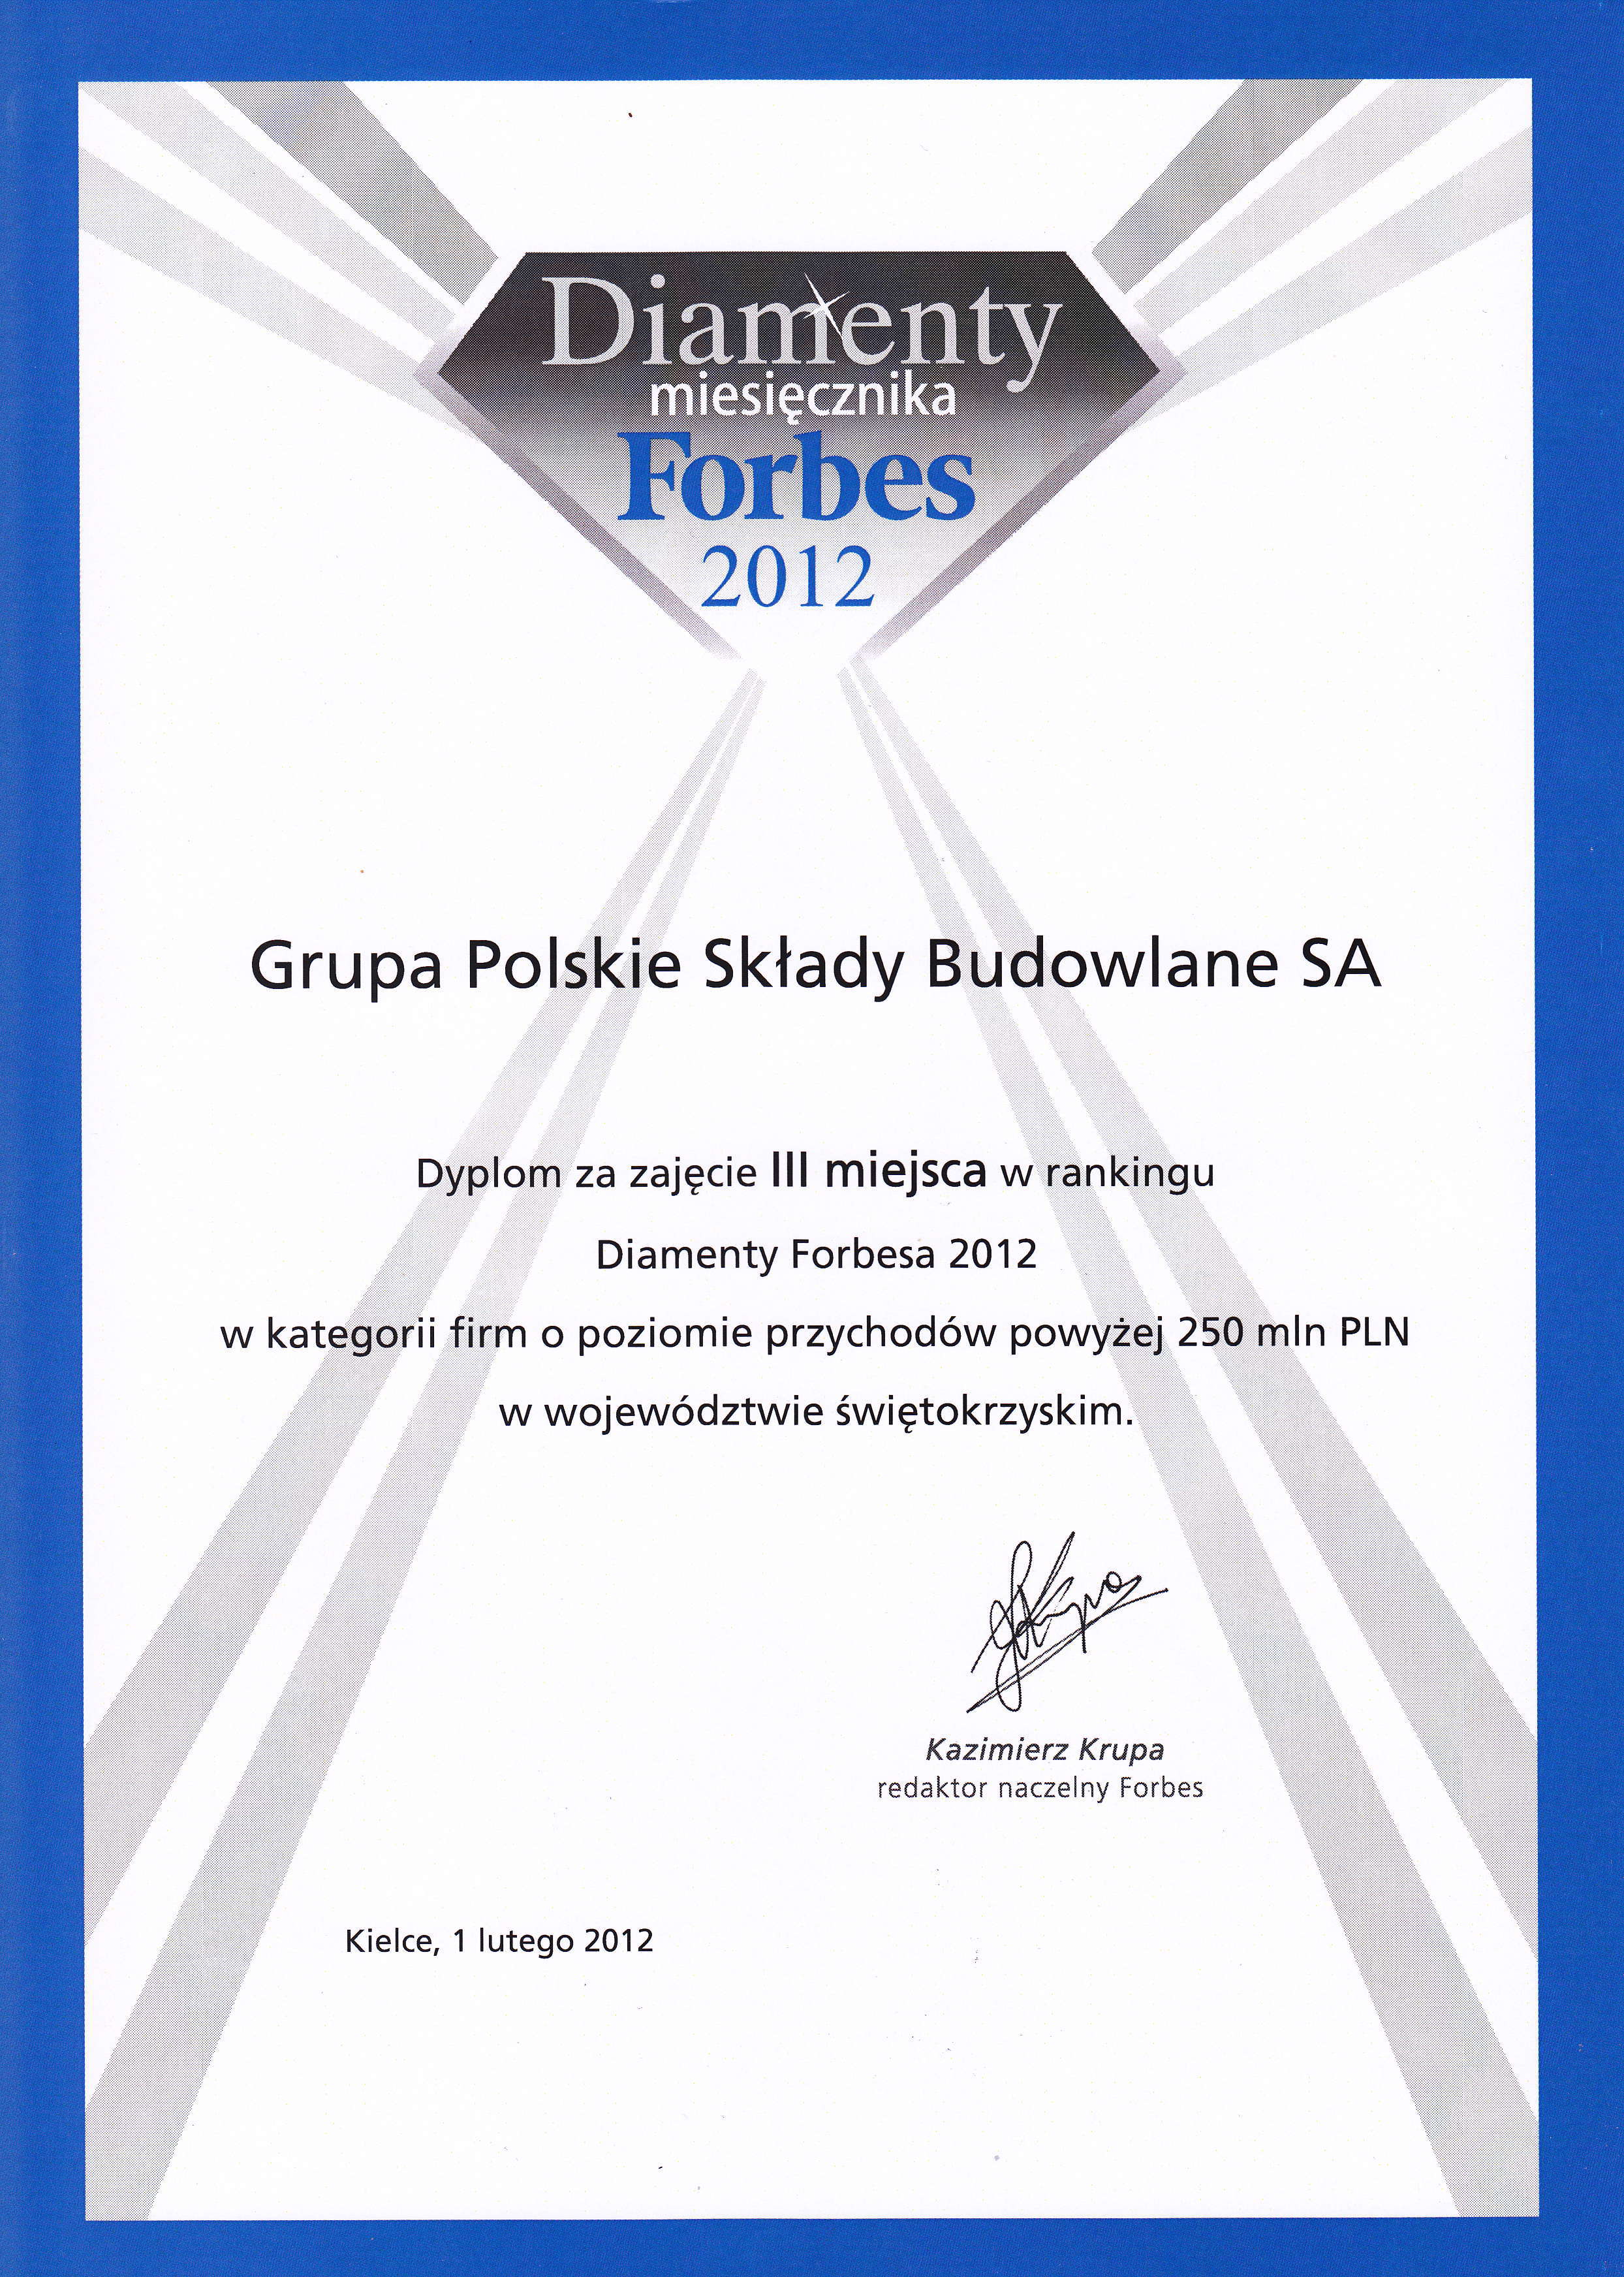 grupa-psb-zajela-iii-miejsce-w-rankingu-diamenty-forbesa-2012